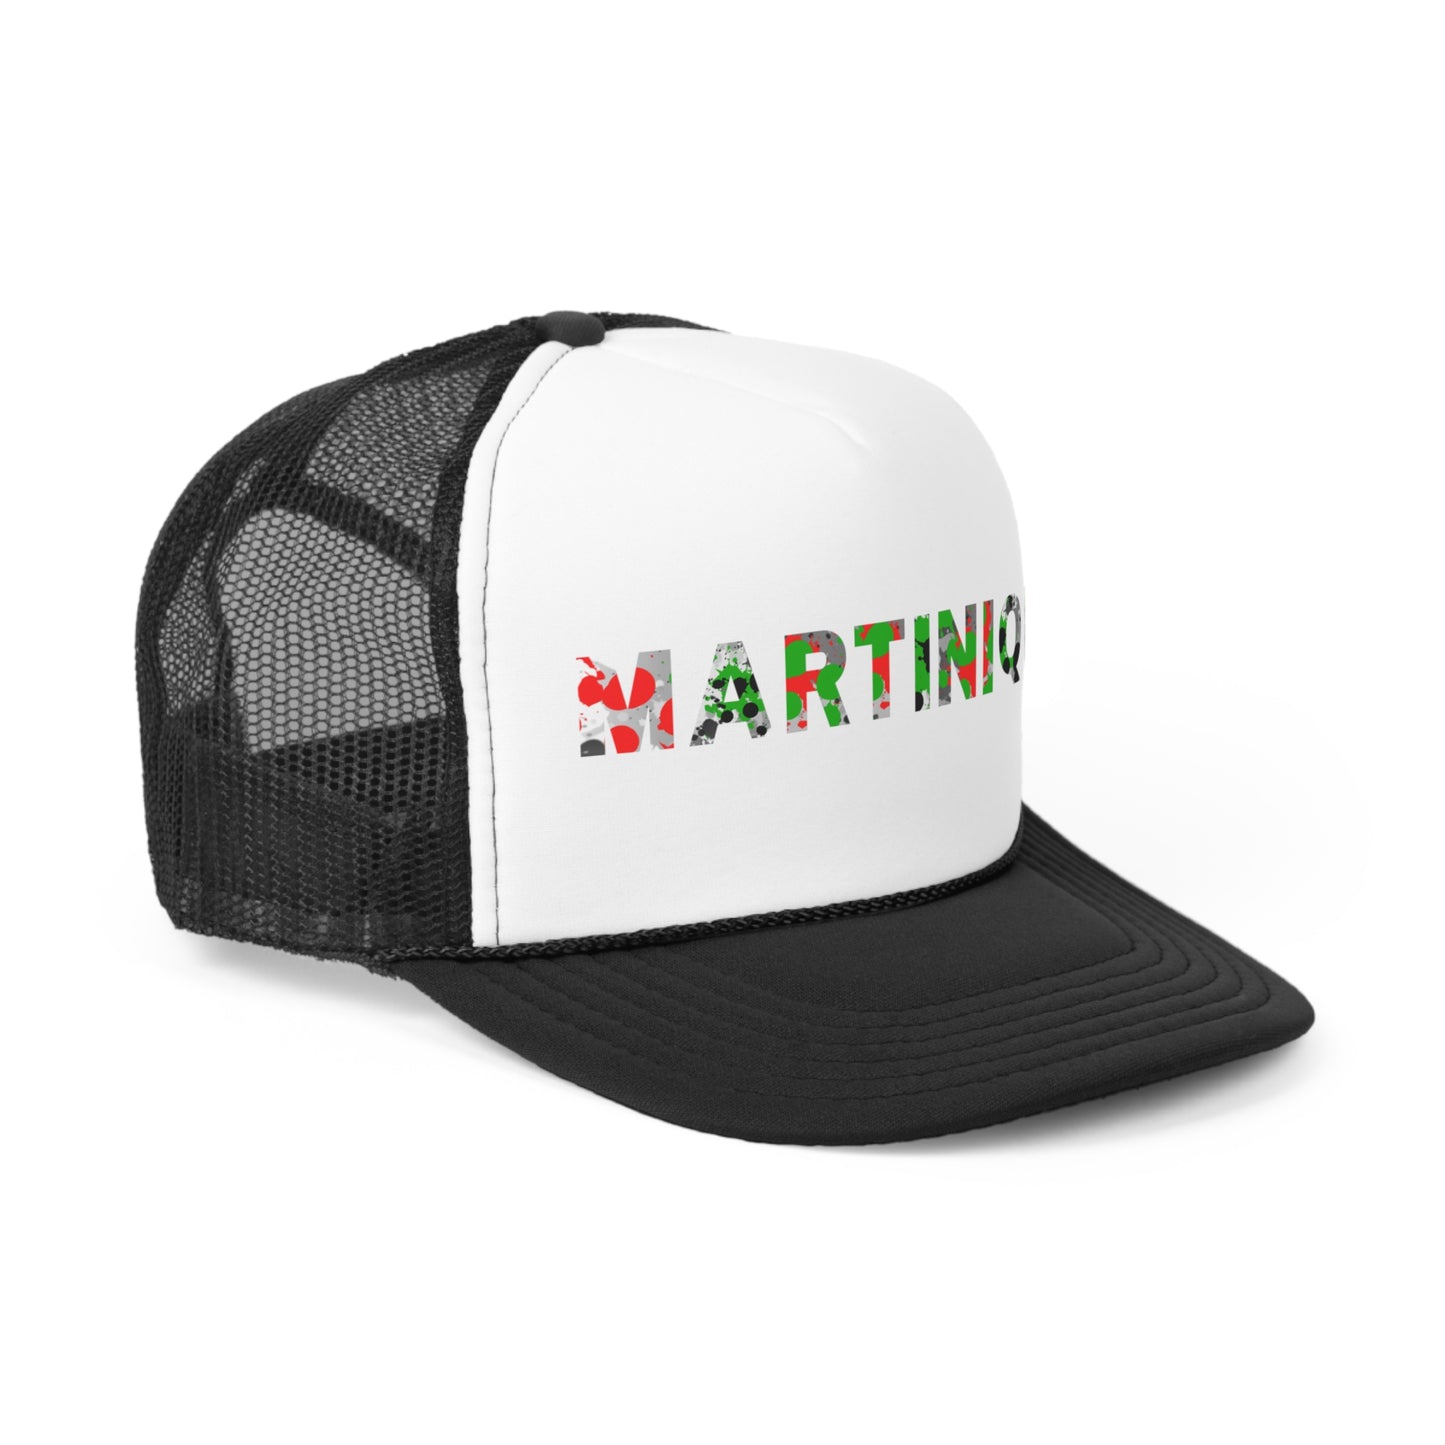 Martinique Trucker Caps